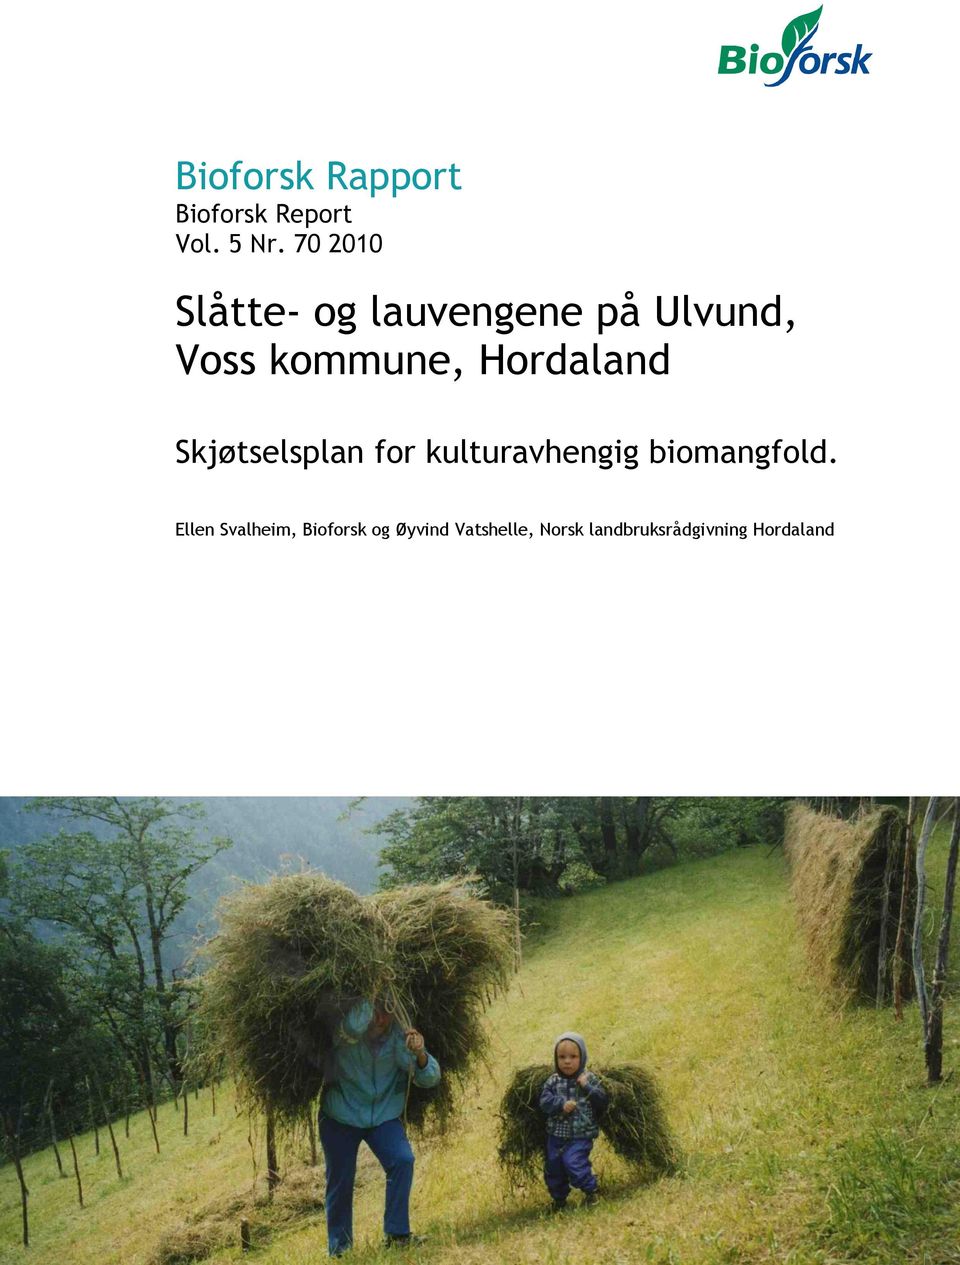 Hordaland Skjøtselsplan for kulturavhengig biomangfold.